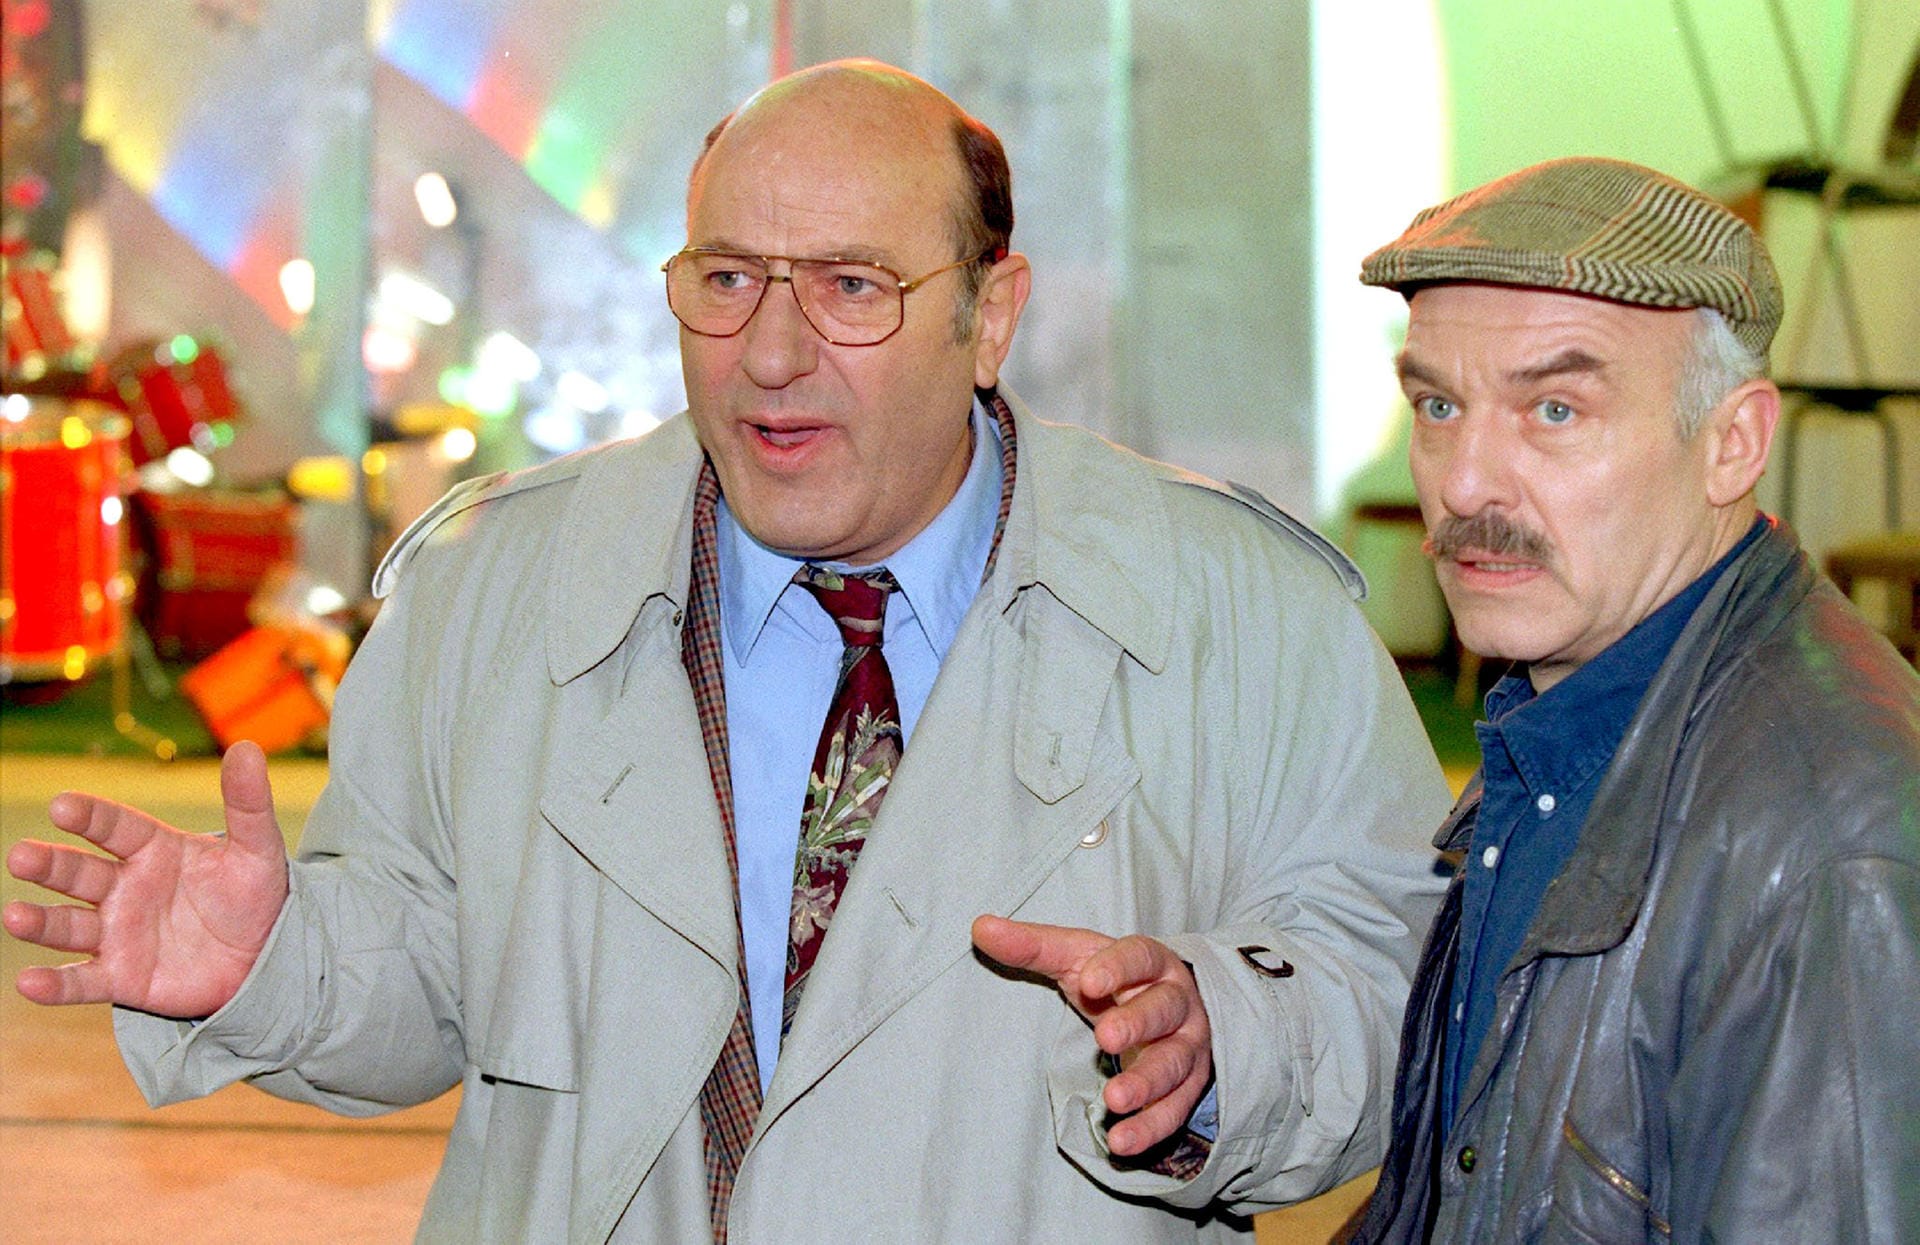 Auch als "Tatort"-Ermittler Paul Stoever spielte er sich in die Herzen der Zuschauer. Von 1984 bis 2001 mimte er in insgesamt 41 Folgen den Hamburger Ermittler, seit 1986 mit Charles Brauer alias Peter Brockmöller an seiner Seite.